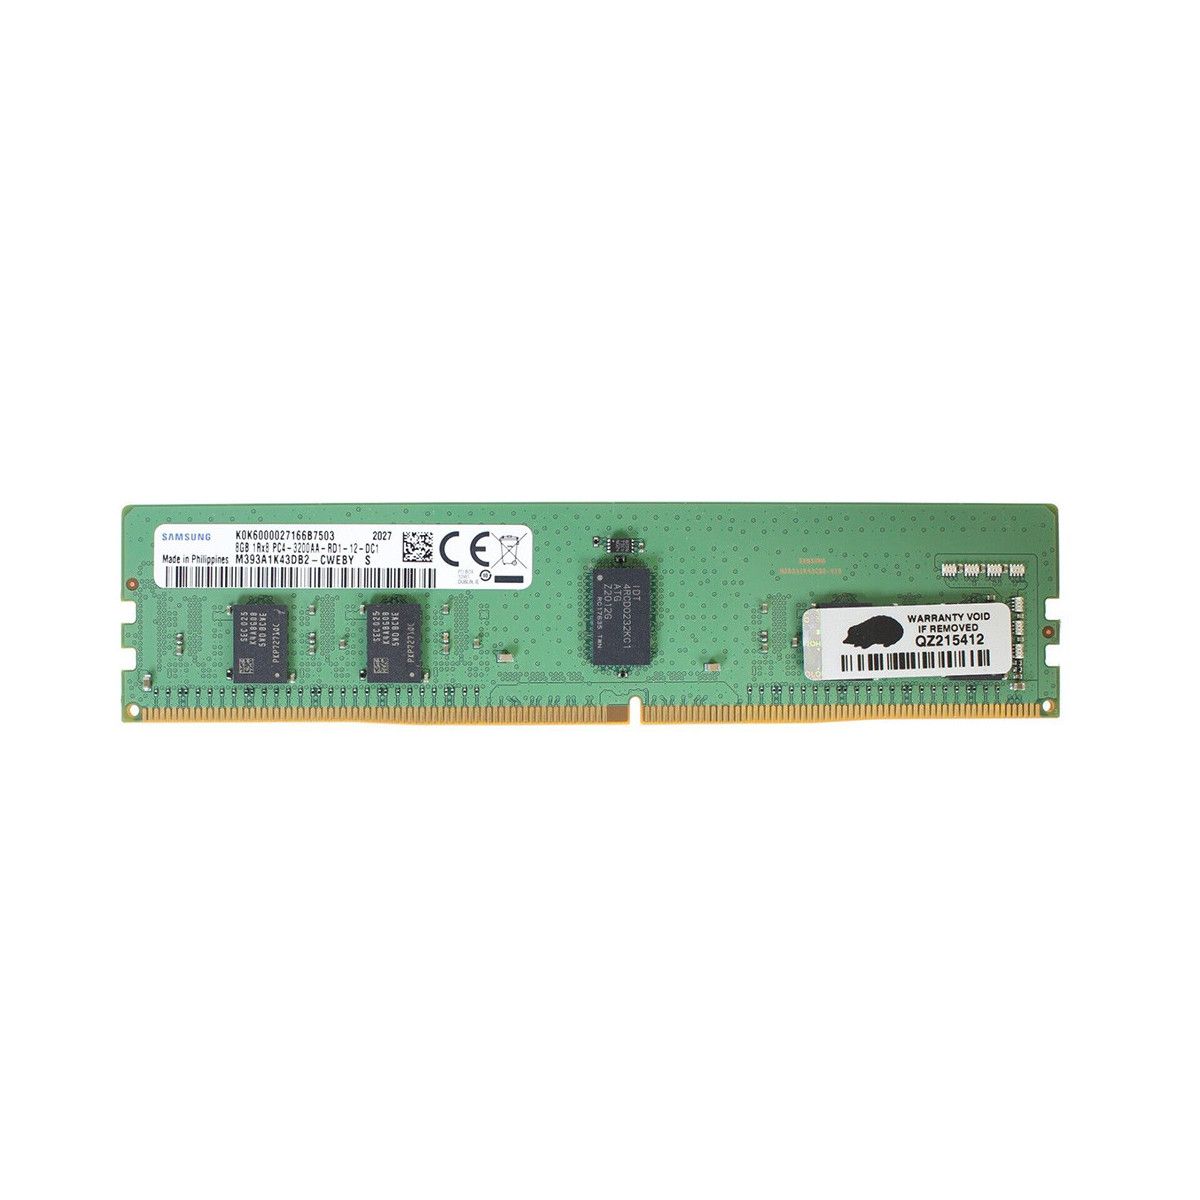 AA810825-MS - Memstar 1x 8GB DDR4-3200 RDIMM PC4-25600R - Mem-Star Kompatibel OEM Speichermedien 1 - Memstar 